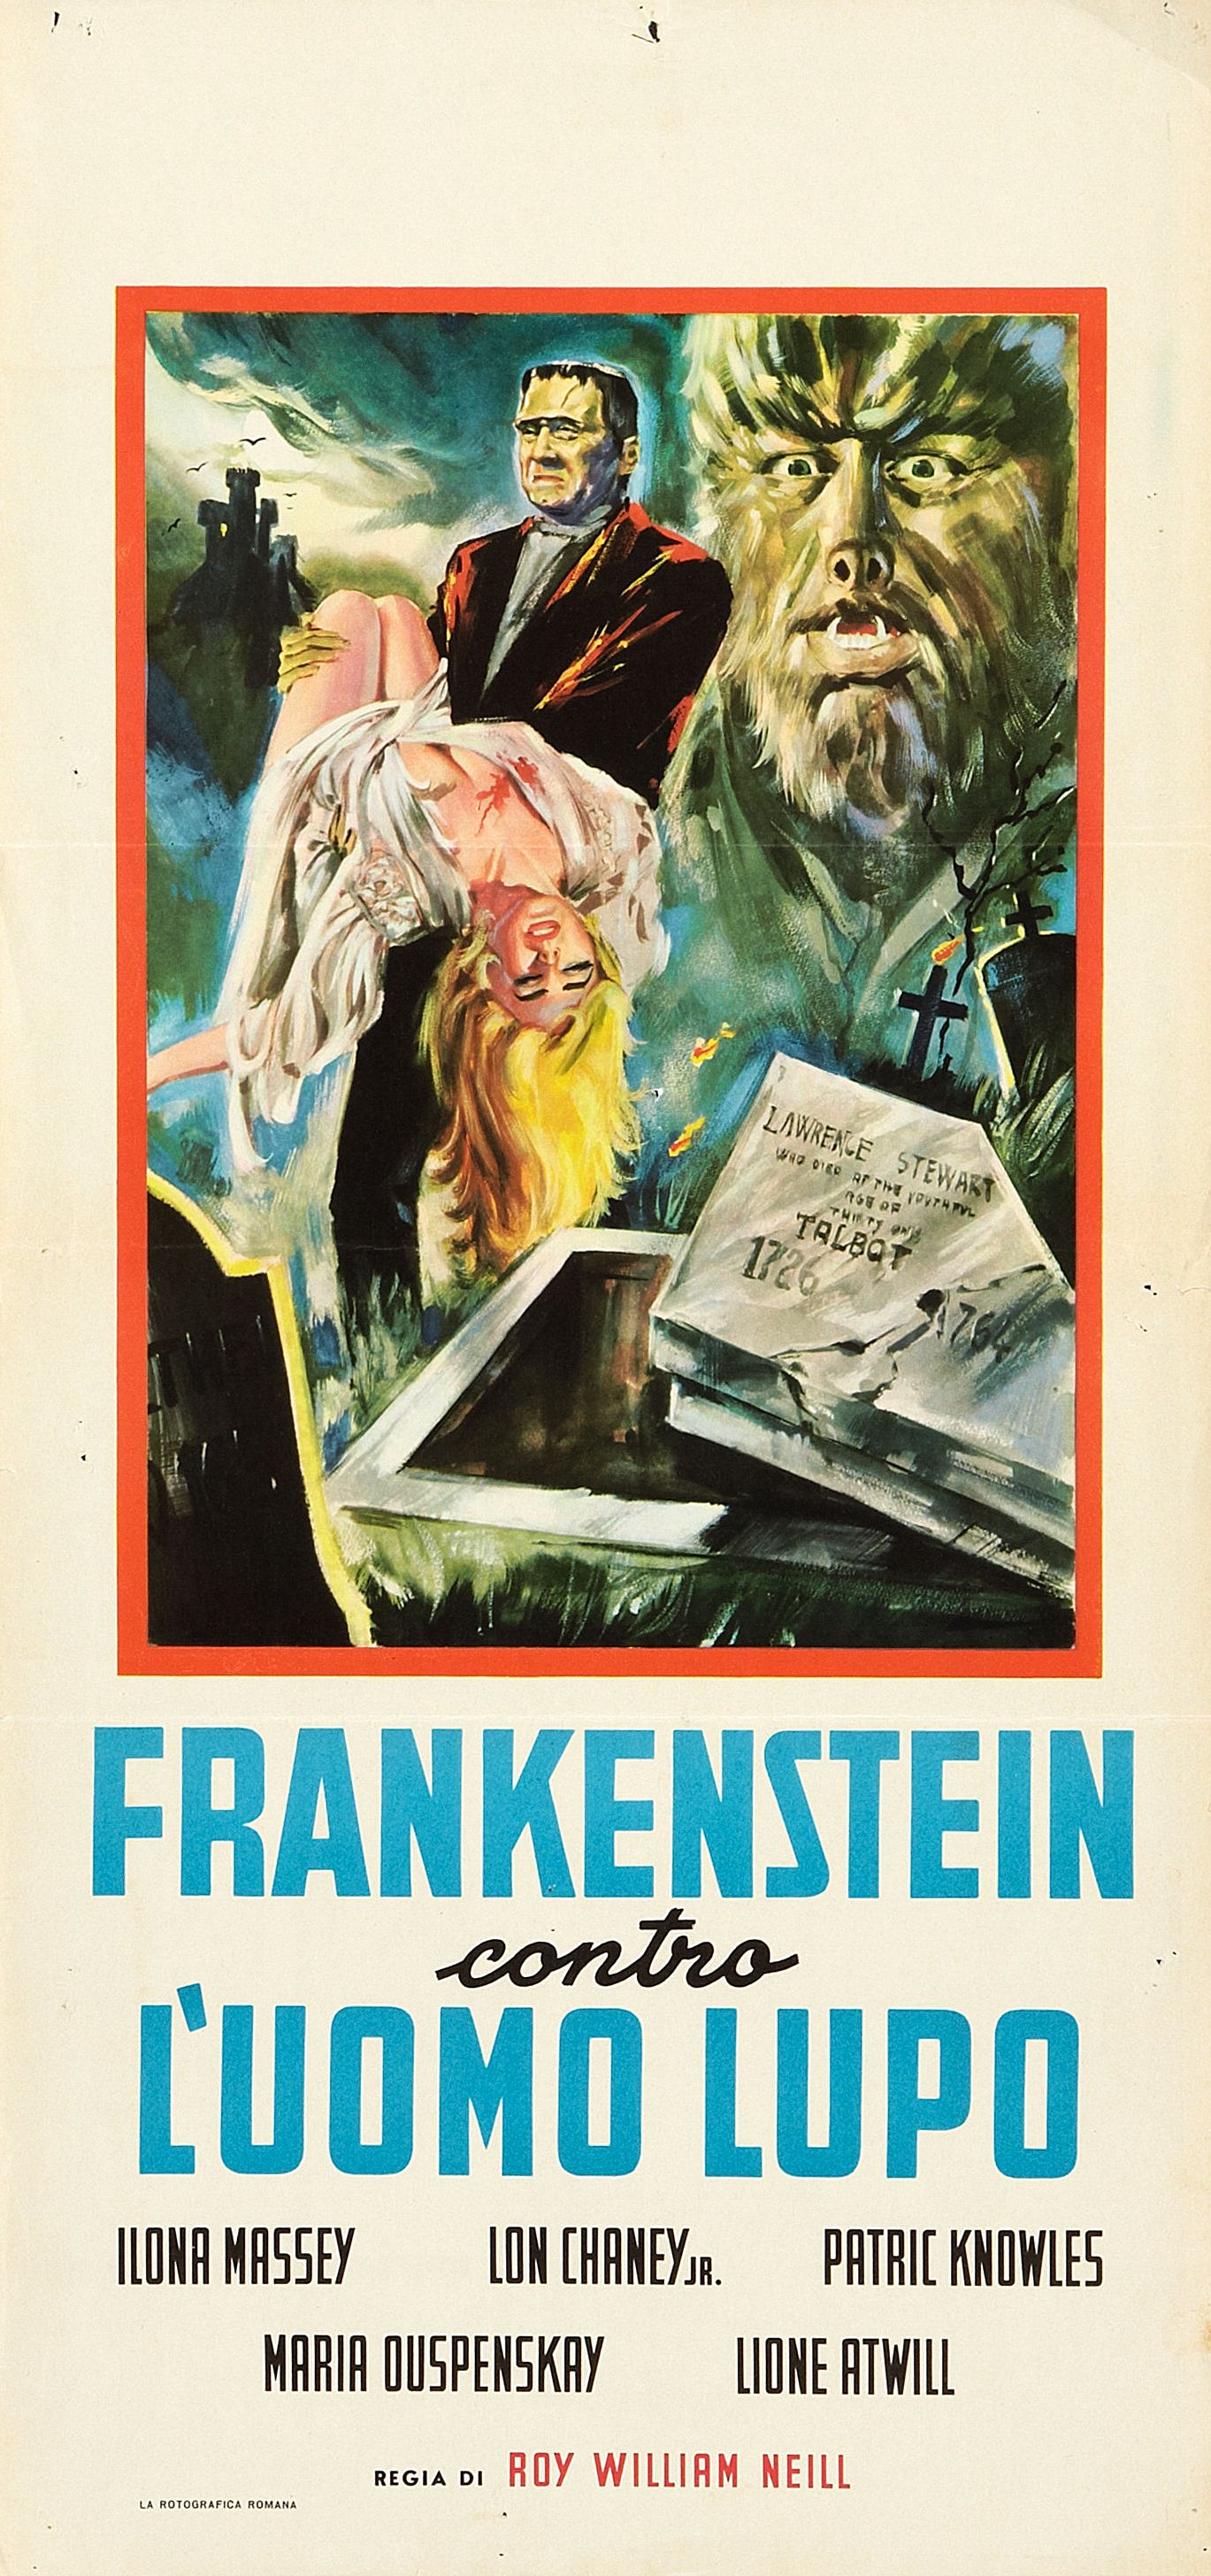 Frankenstein Meets the Wolf Man (1943)